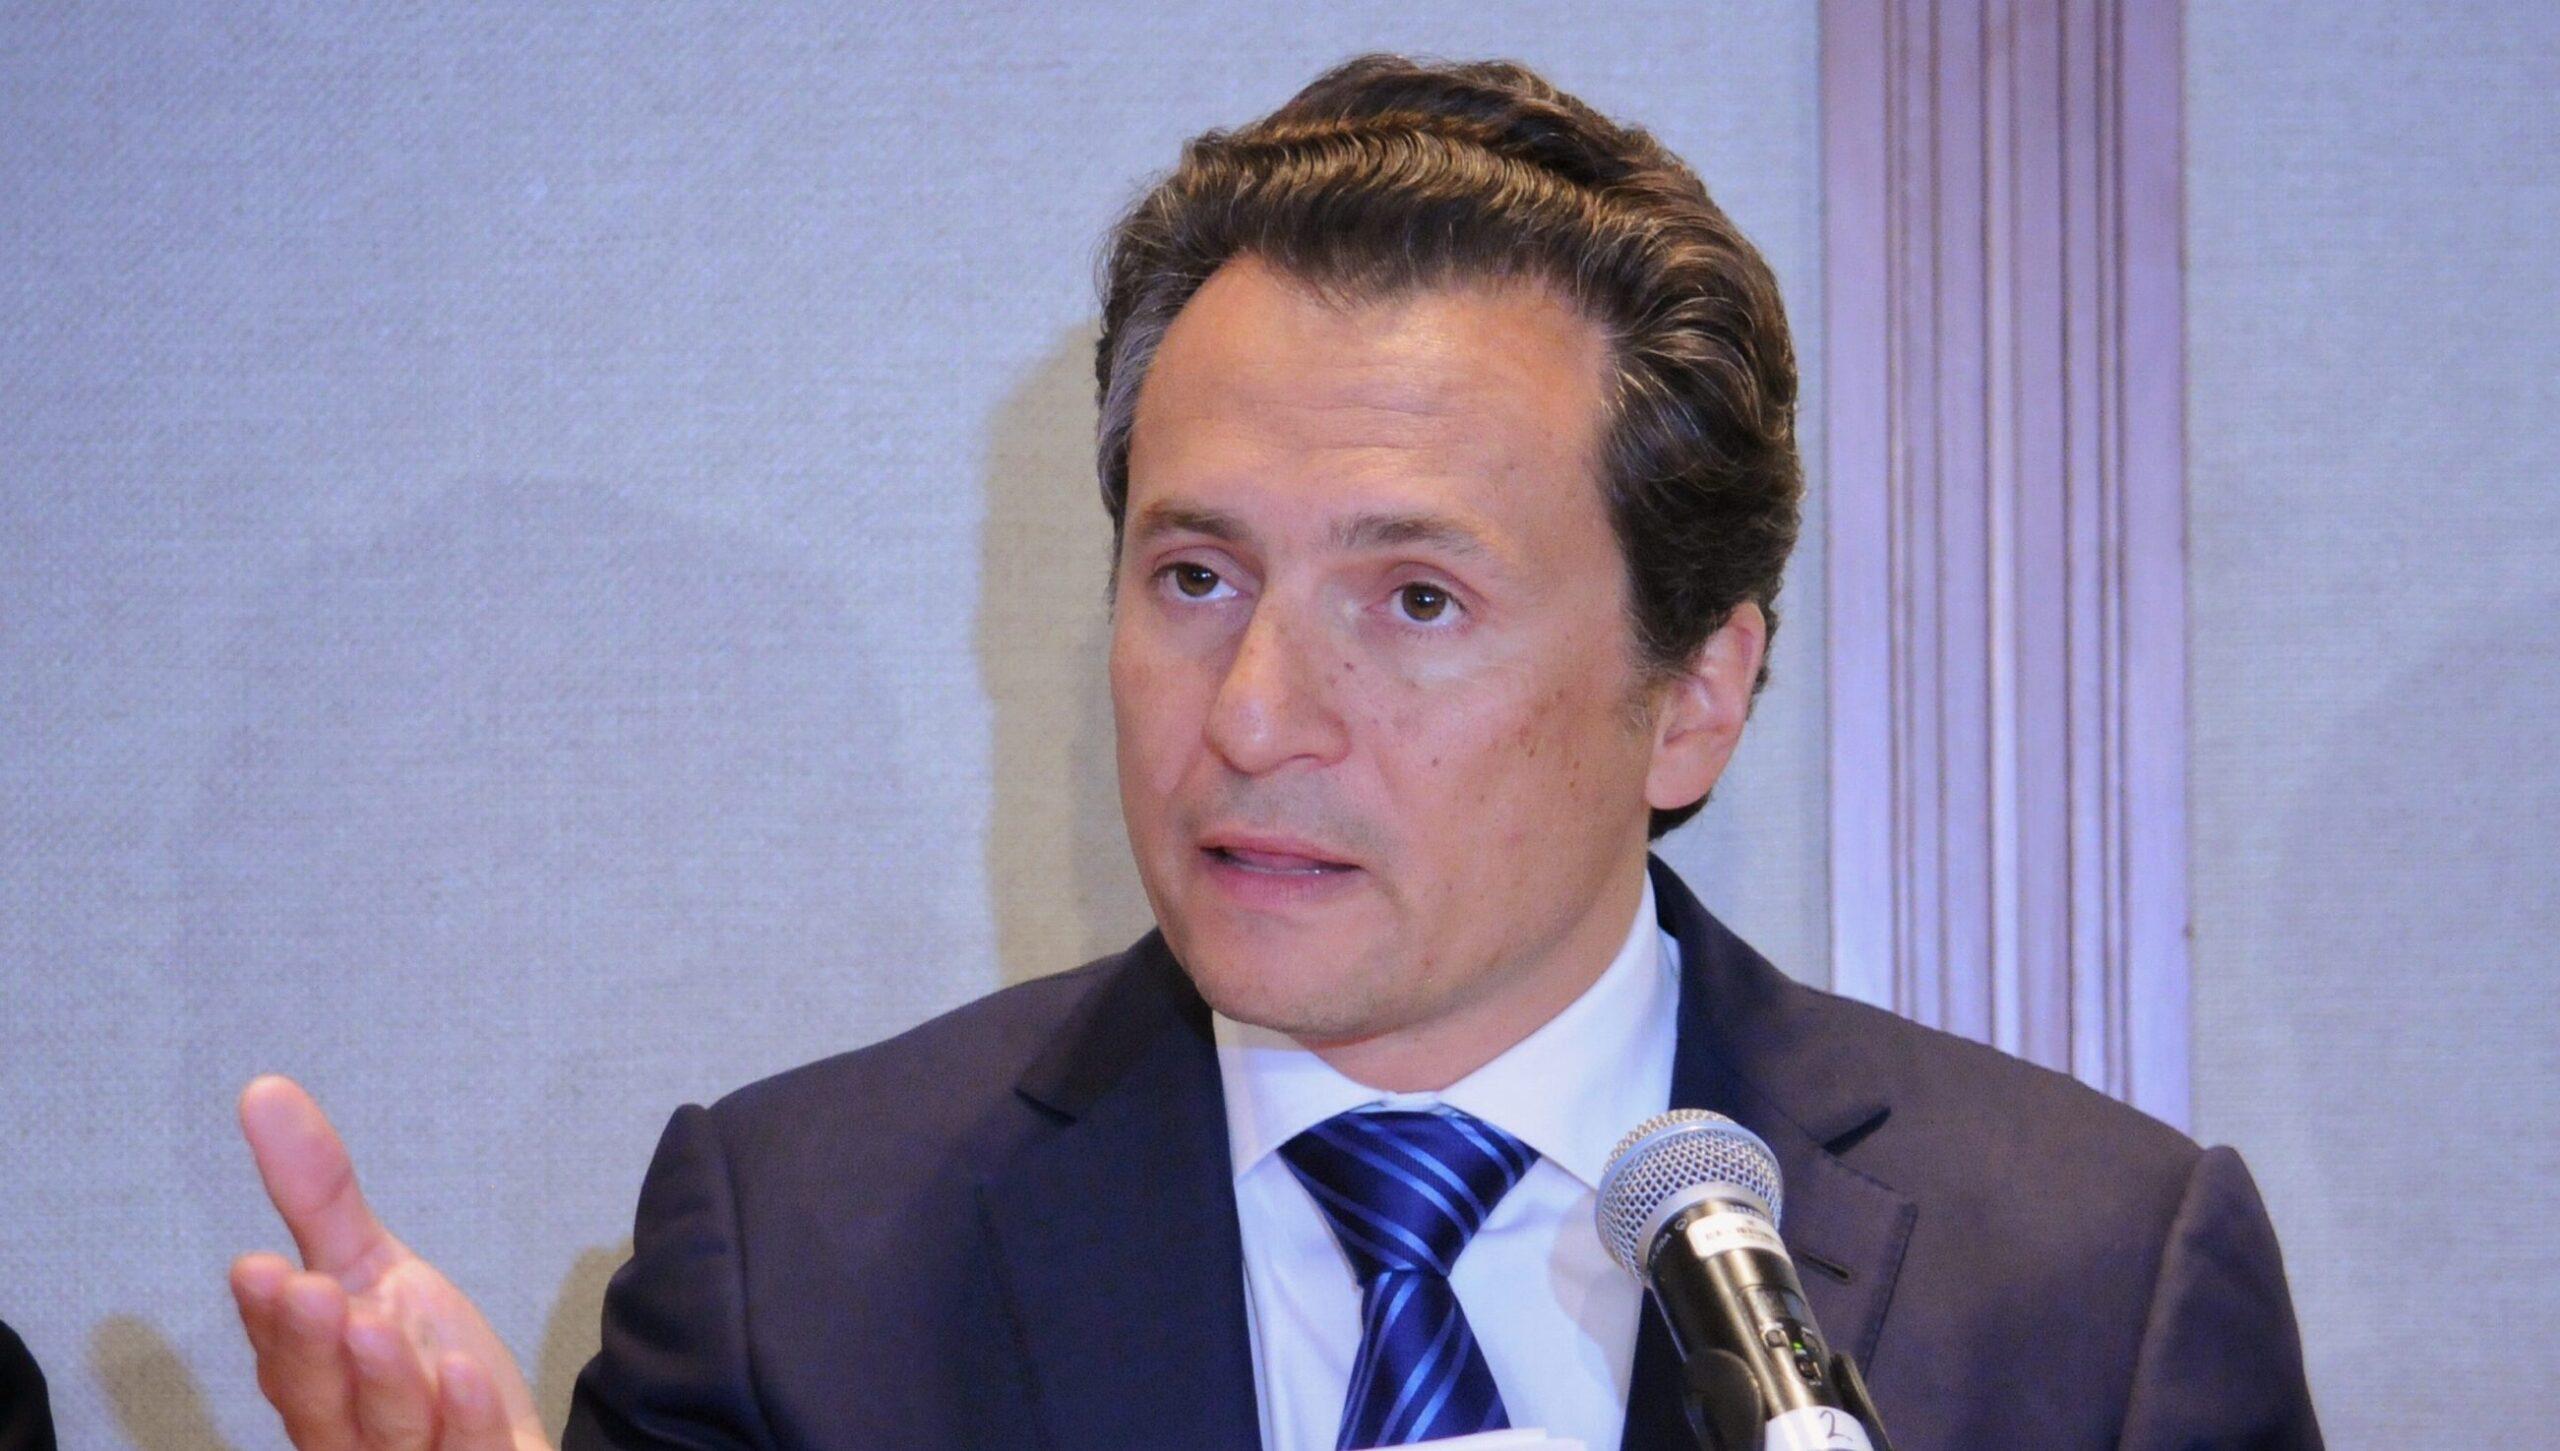 Empresas de Emilio Lozoya recibieron sobornos millonarios de Odebrecht, declara exfuncionario